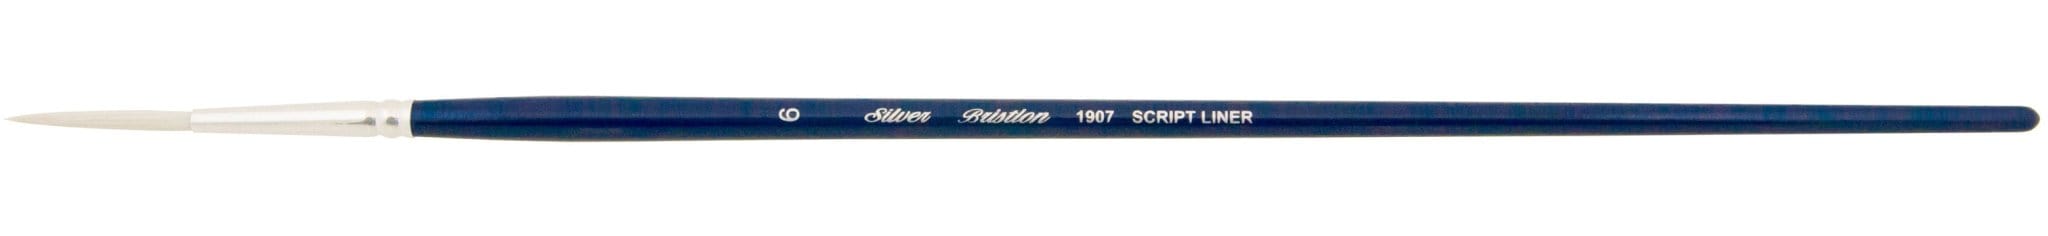 SILVER BRUSH SILVER BRUSH Silver Brush 1907 Bristlon Brushes